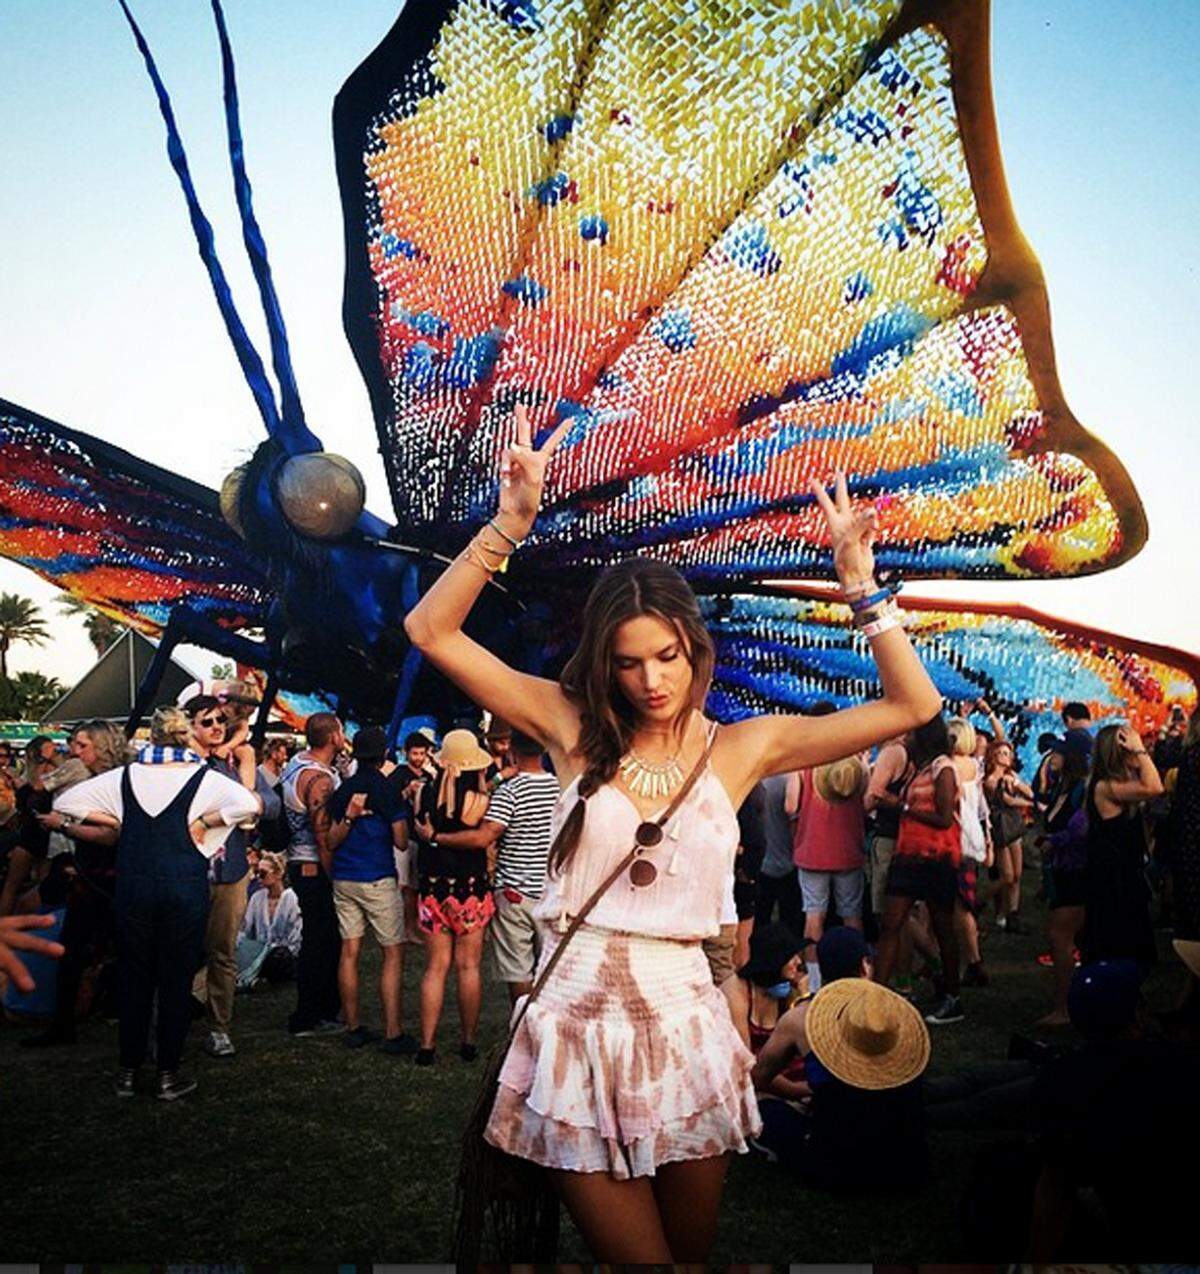 Musik und Mode liegen beim Coachella Festival in Kalifornien ganz nah beisammen. Batik und Fransen sorgen für Hippie-Feeling, weiß Victoria's Secret Model Alessandra Ambrosio.